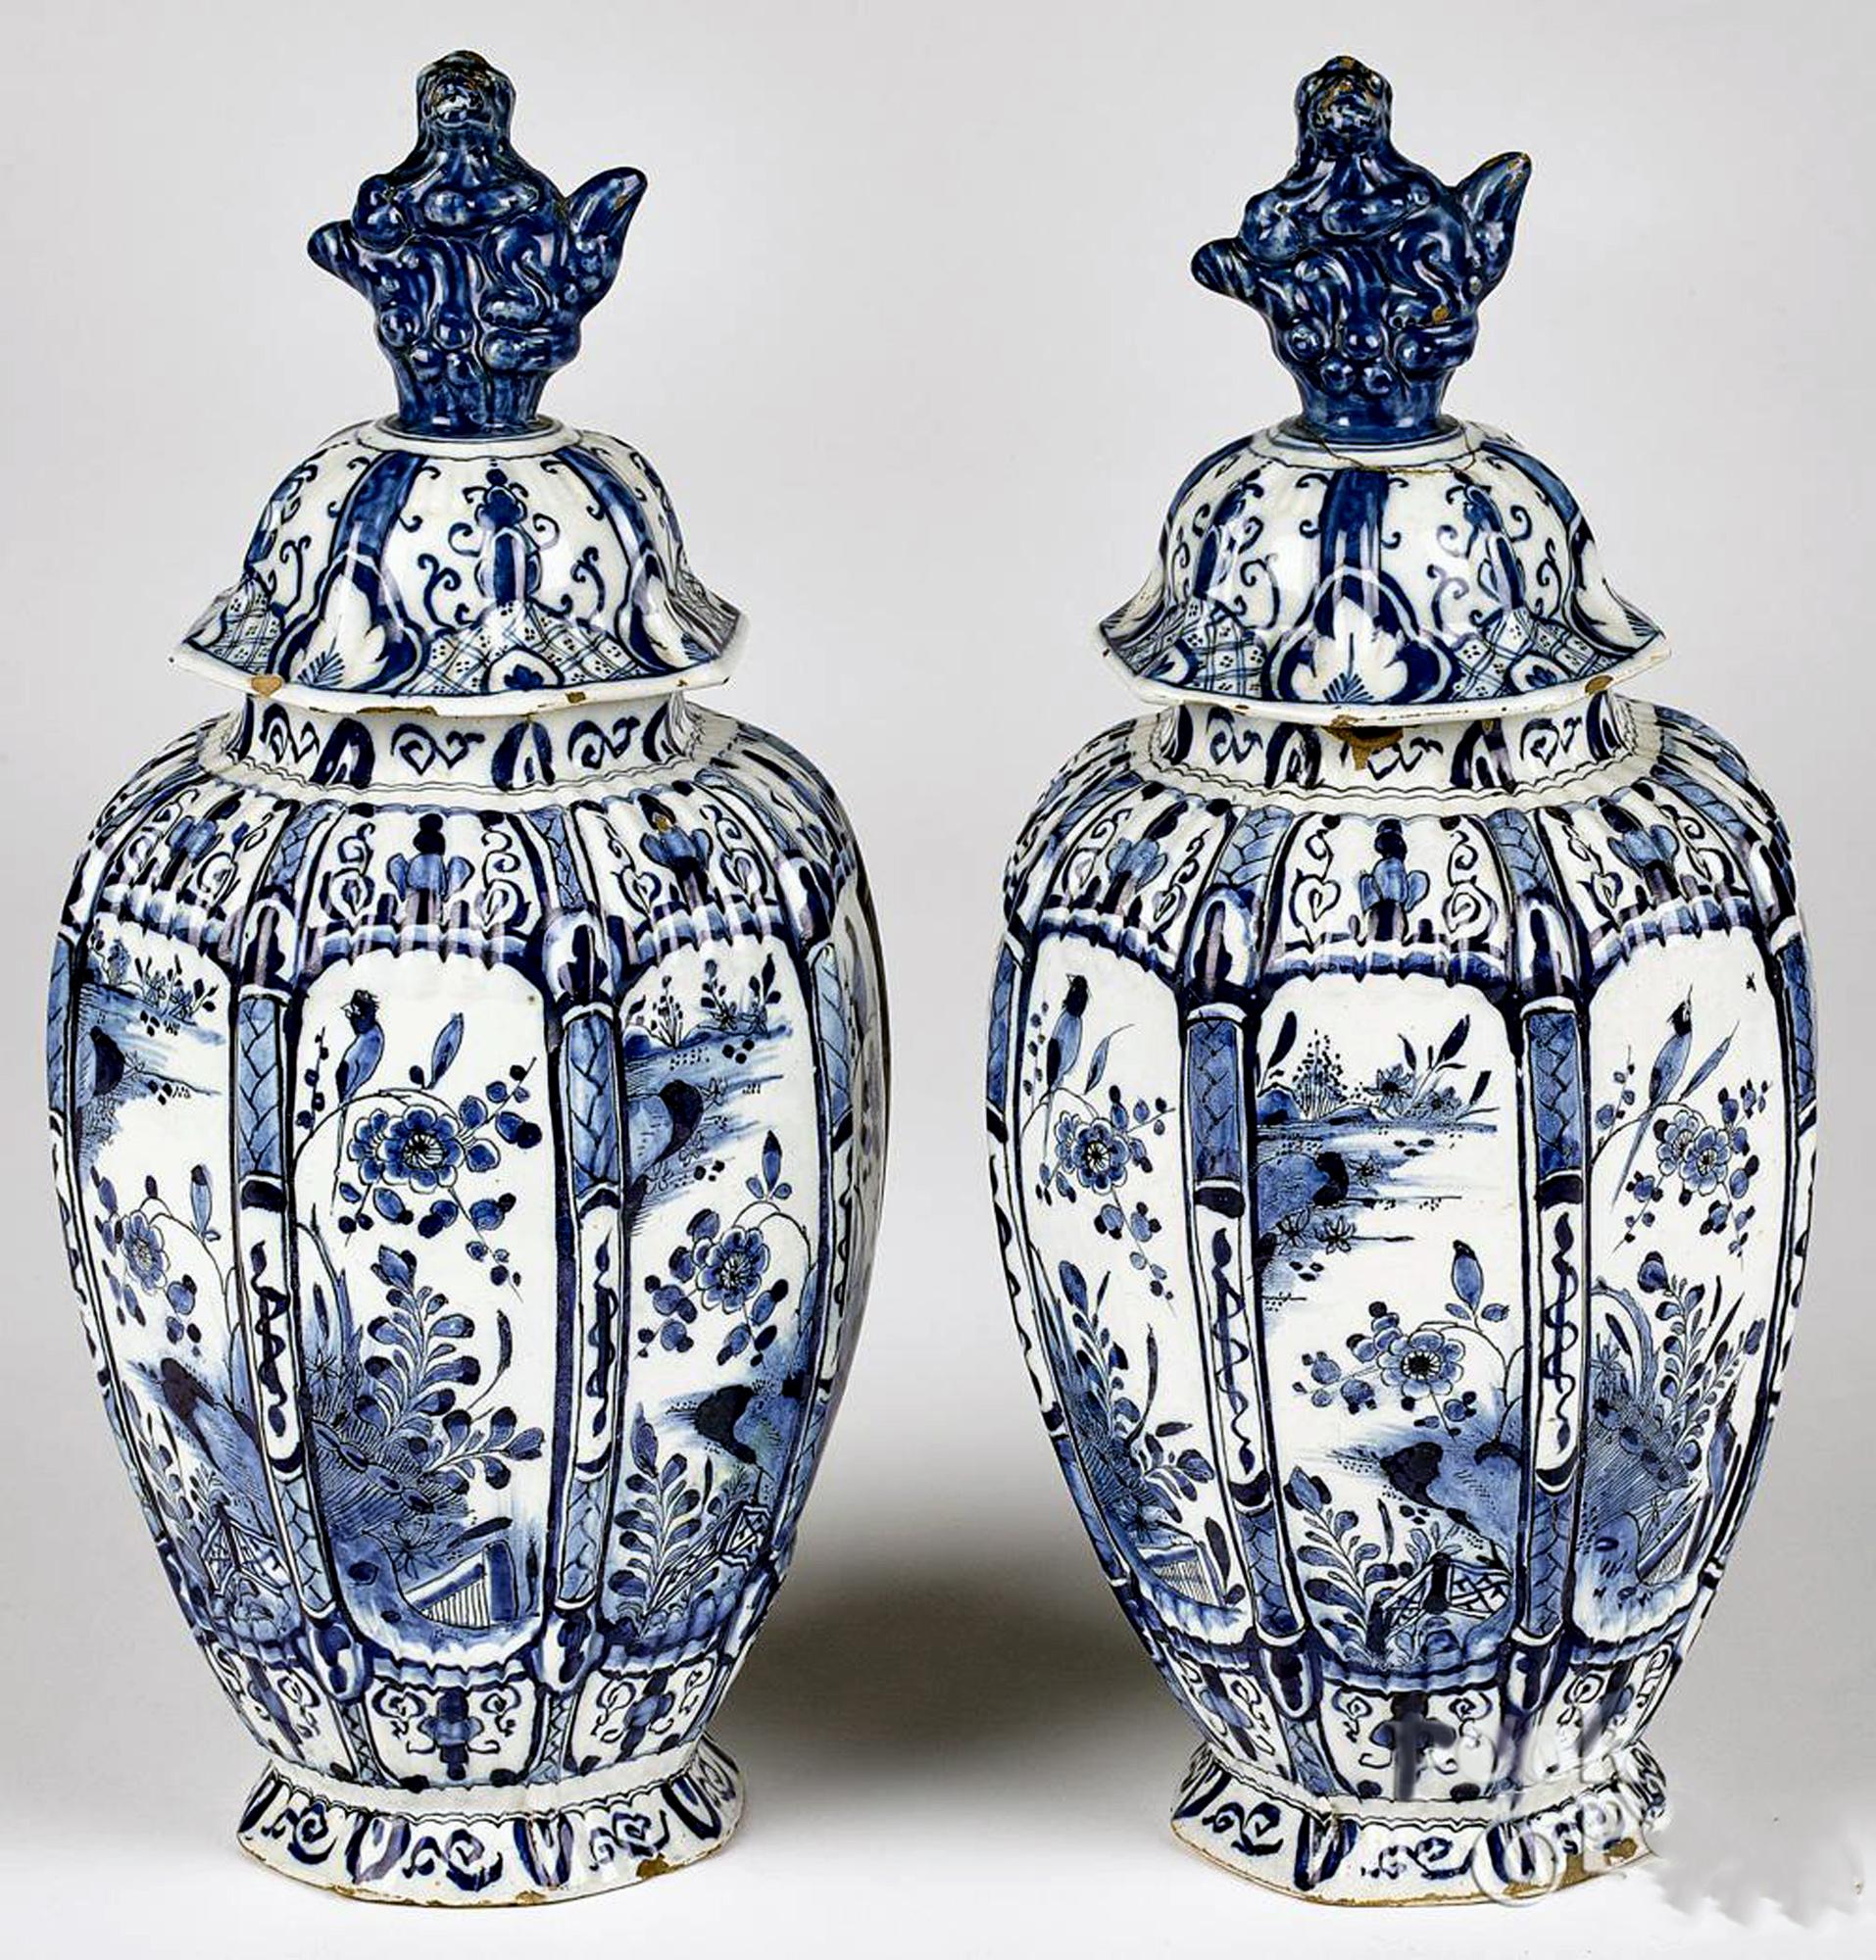 Niederländische Delft Unterglasurblau & Weiß Vasen & Deckel,
De Twee Scheepjes Factory (